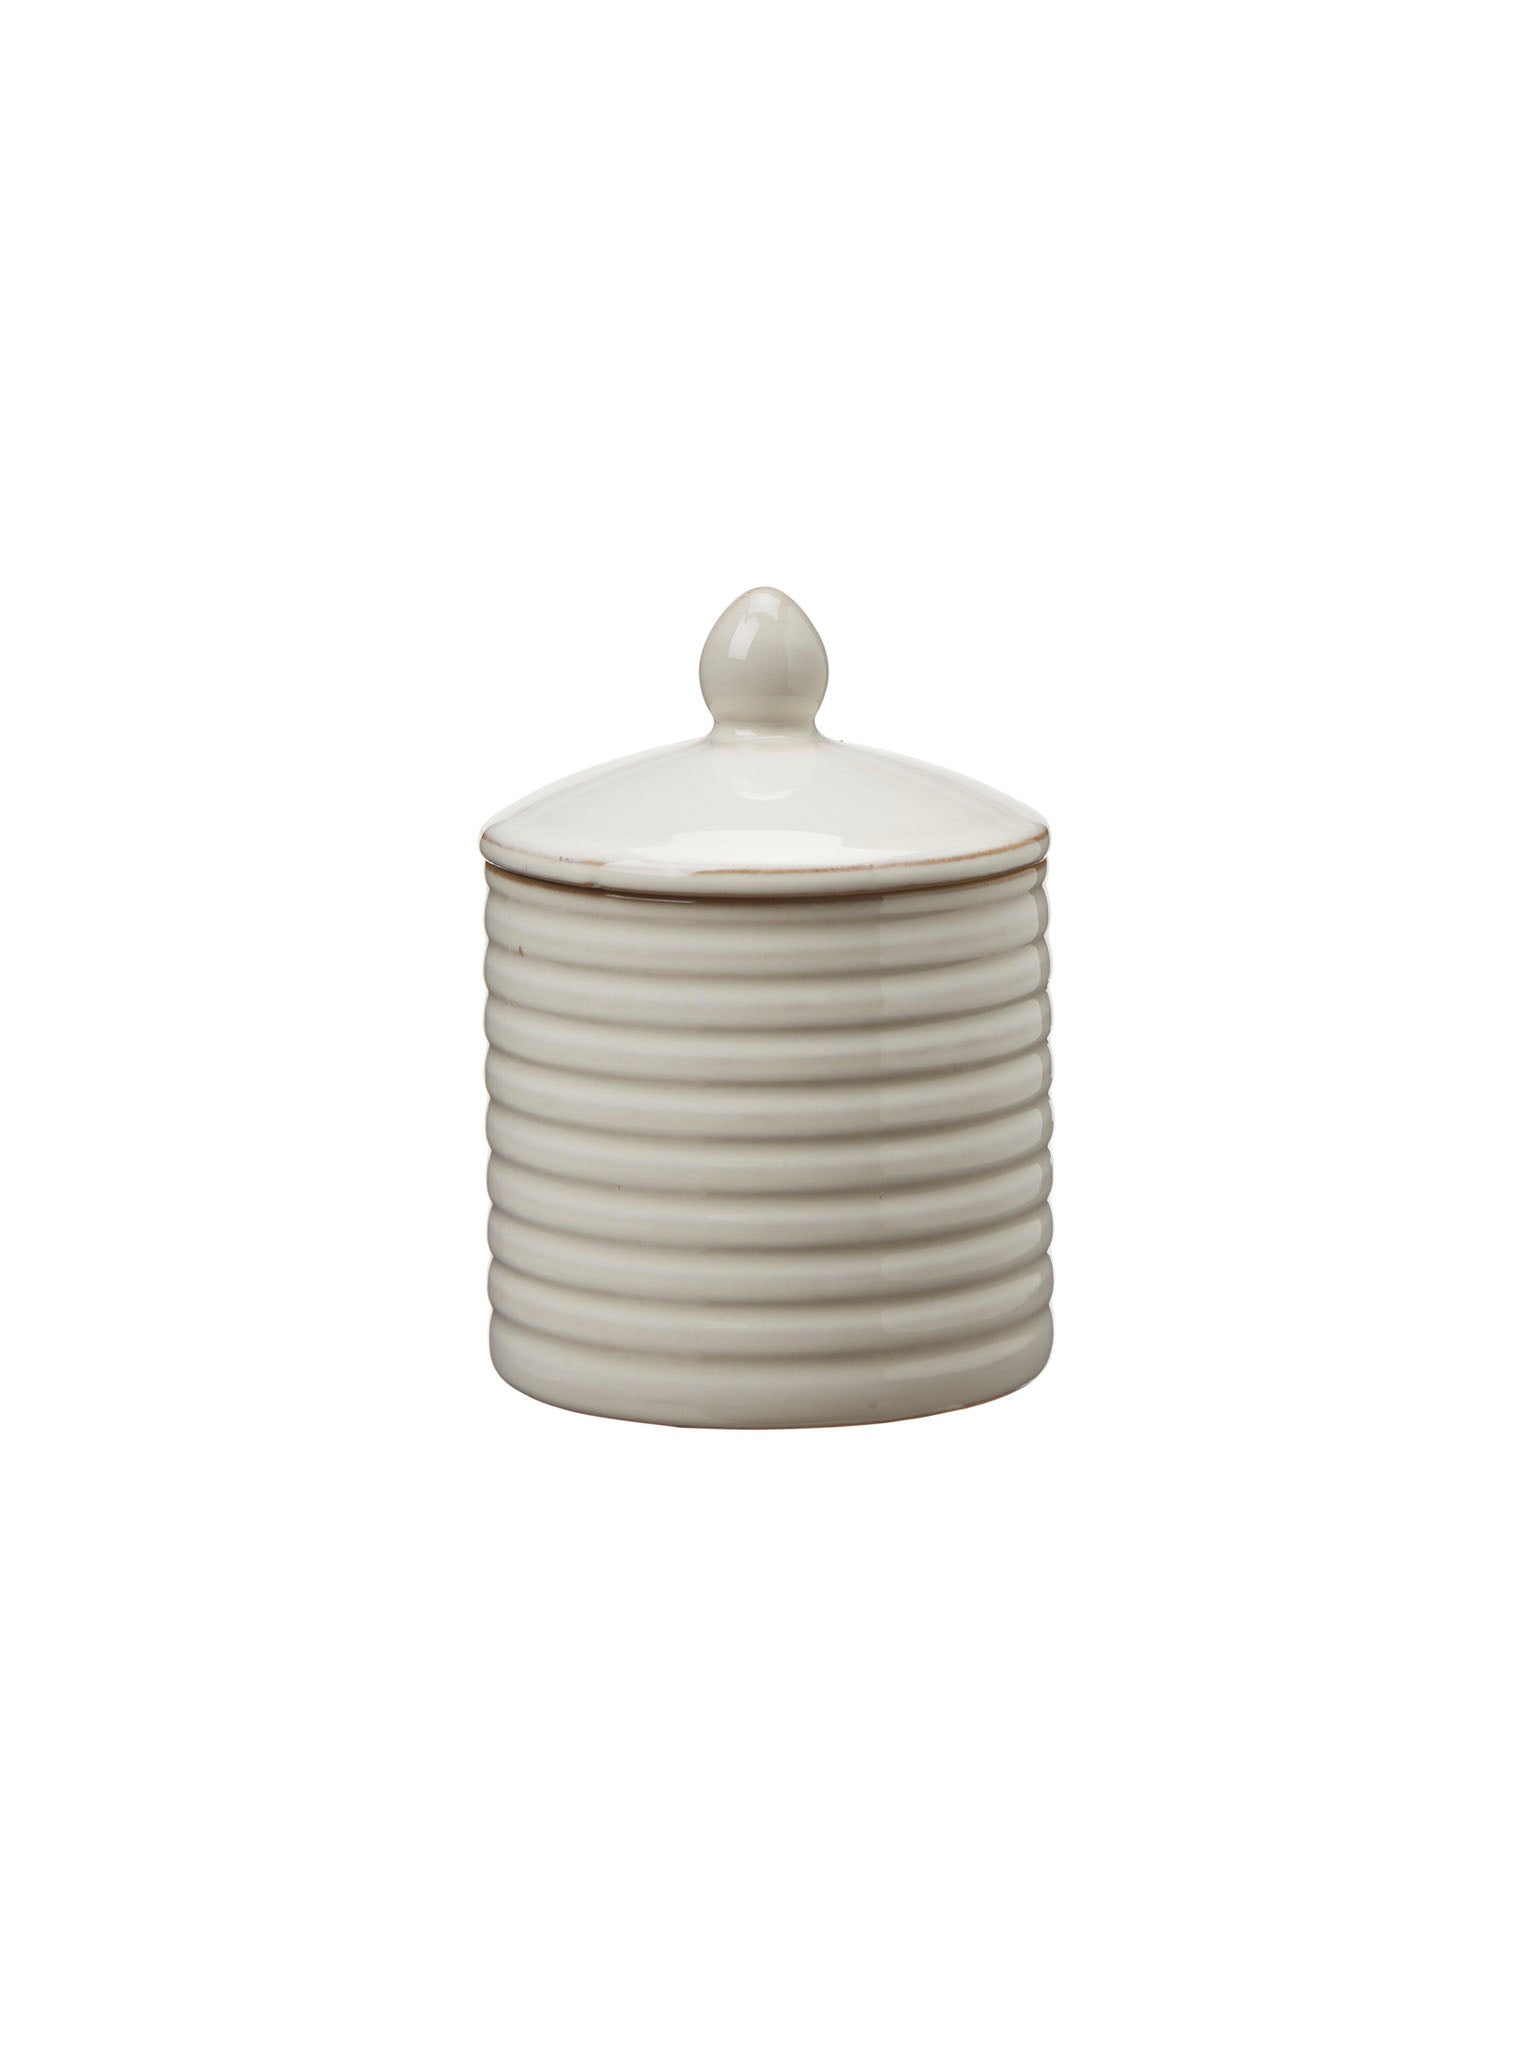 ceramic jar with lid